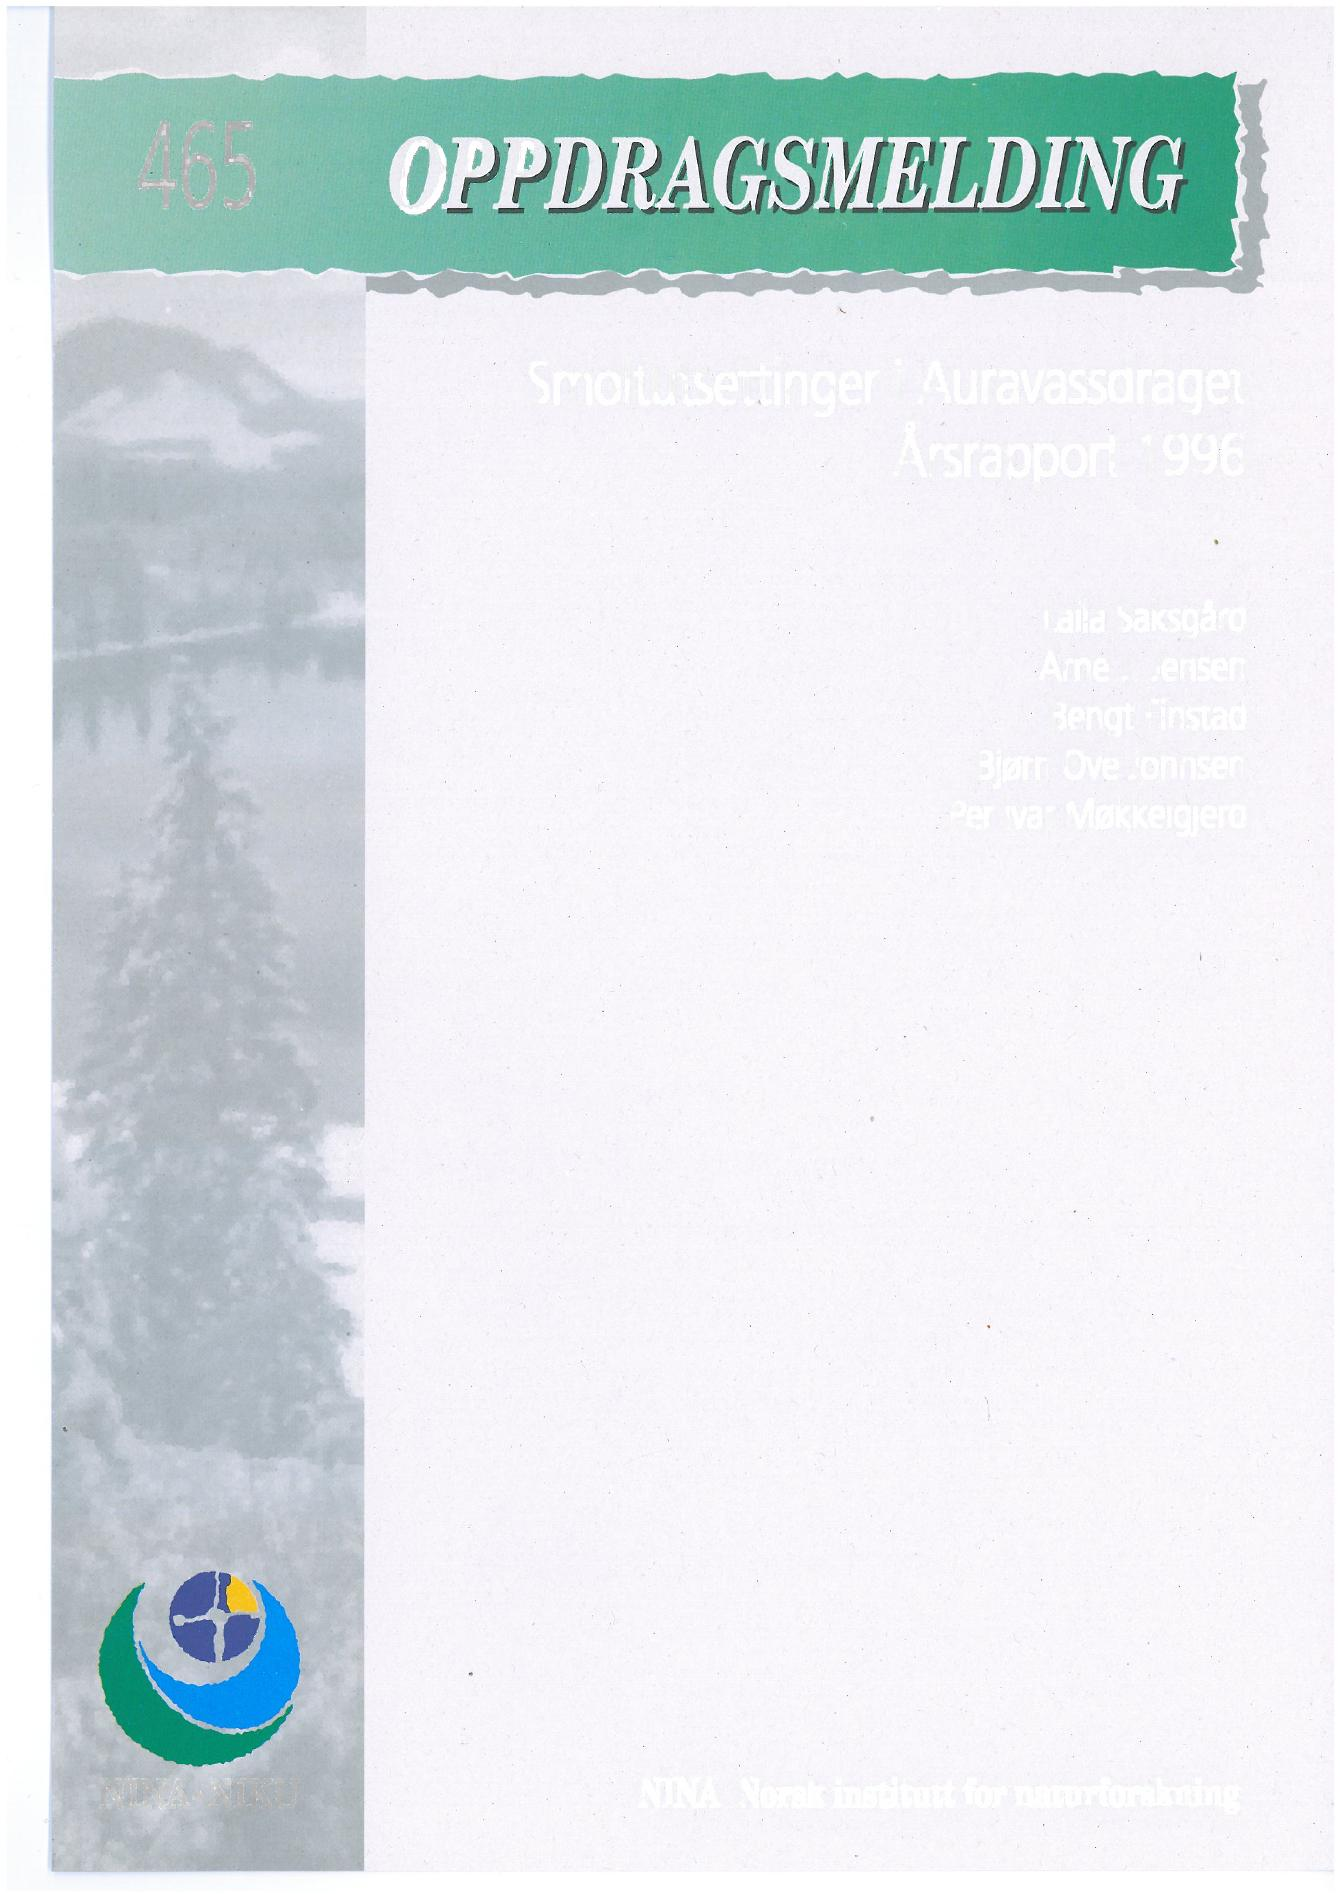 Smoltutsettinger i Auravassdraget Årsrapport 1996 Laila Saksgård Arne J.